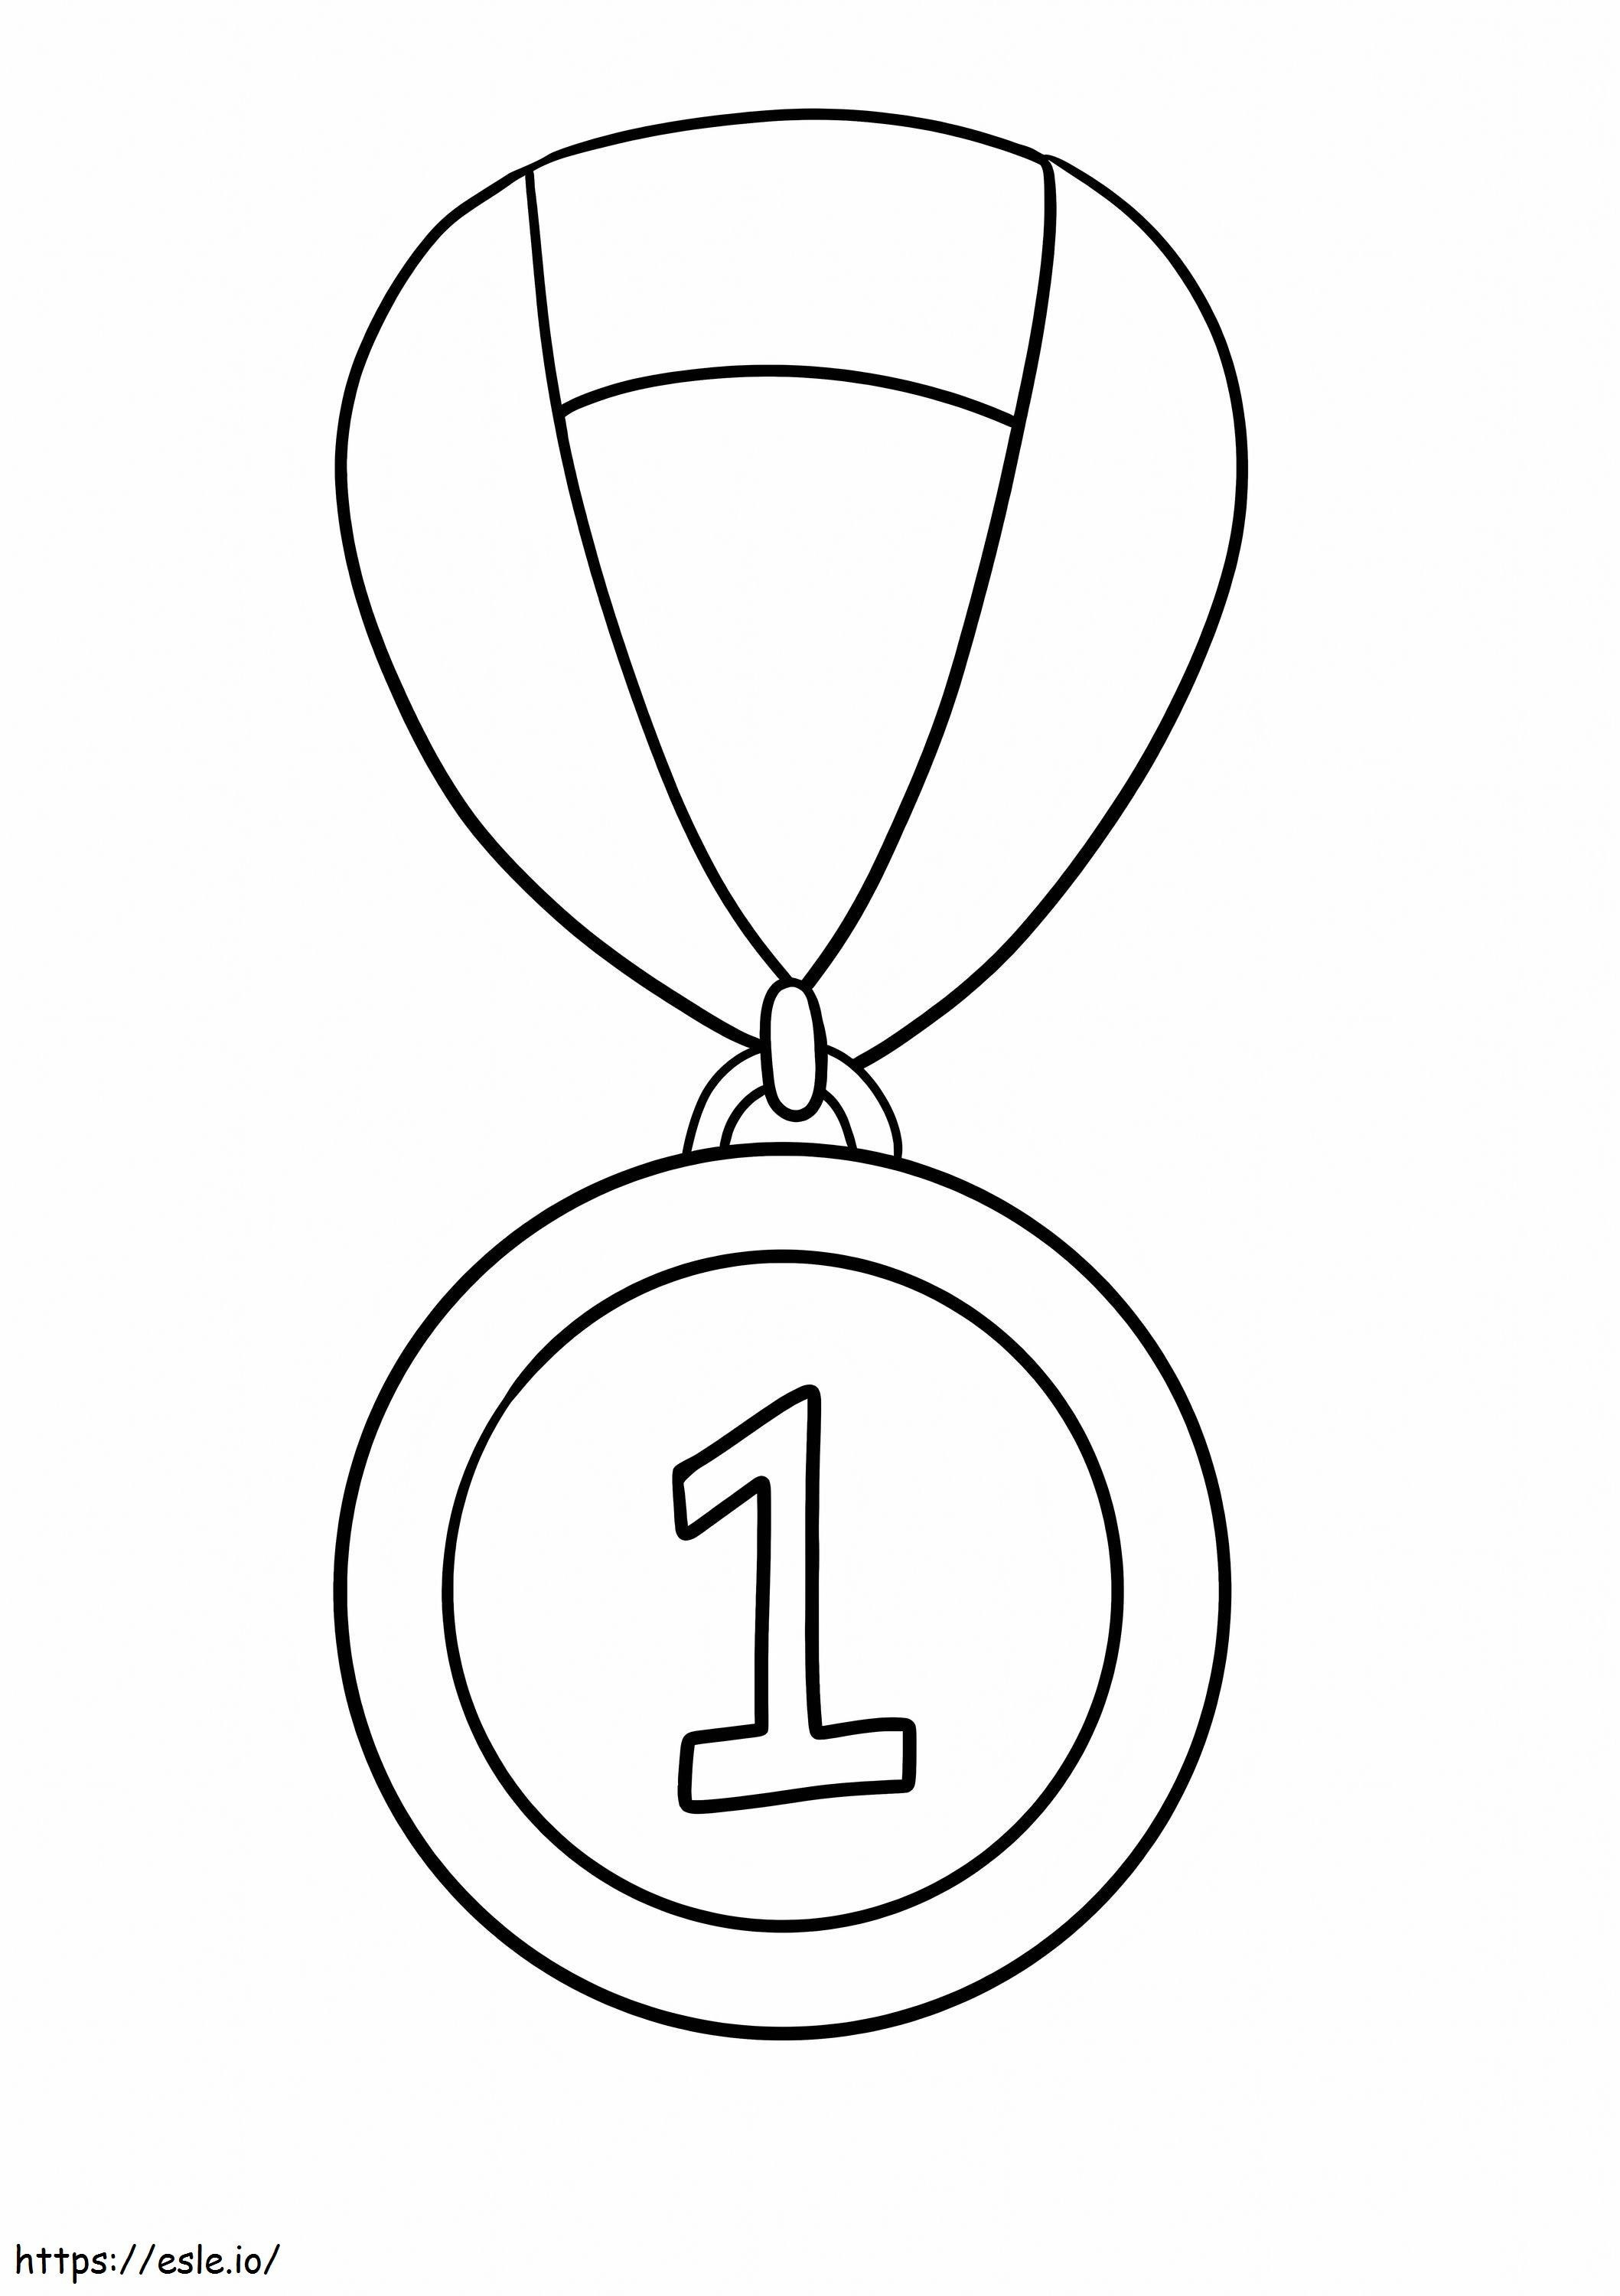 Medalha Número 1 para colorir